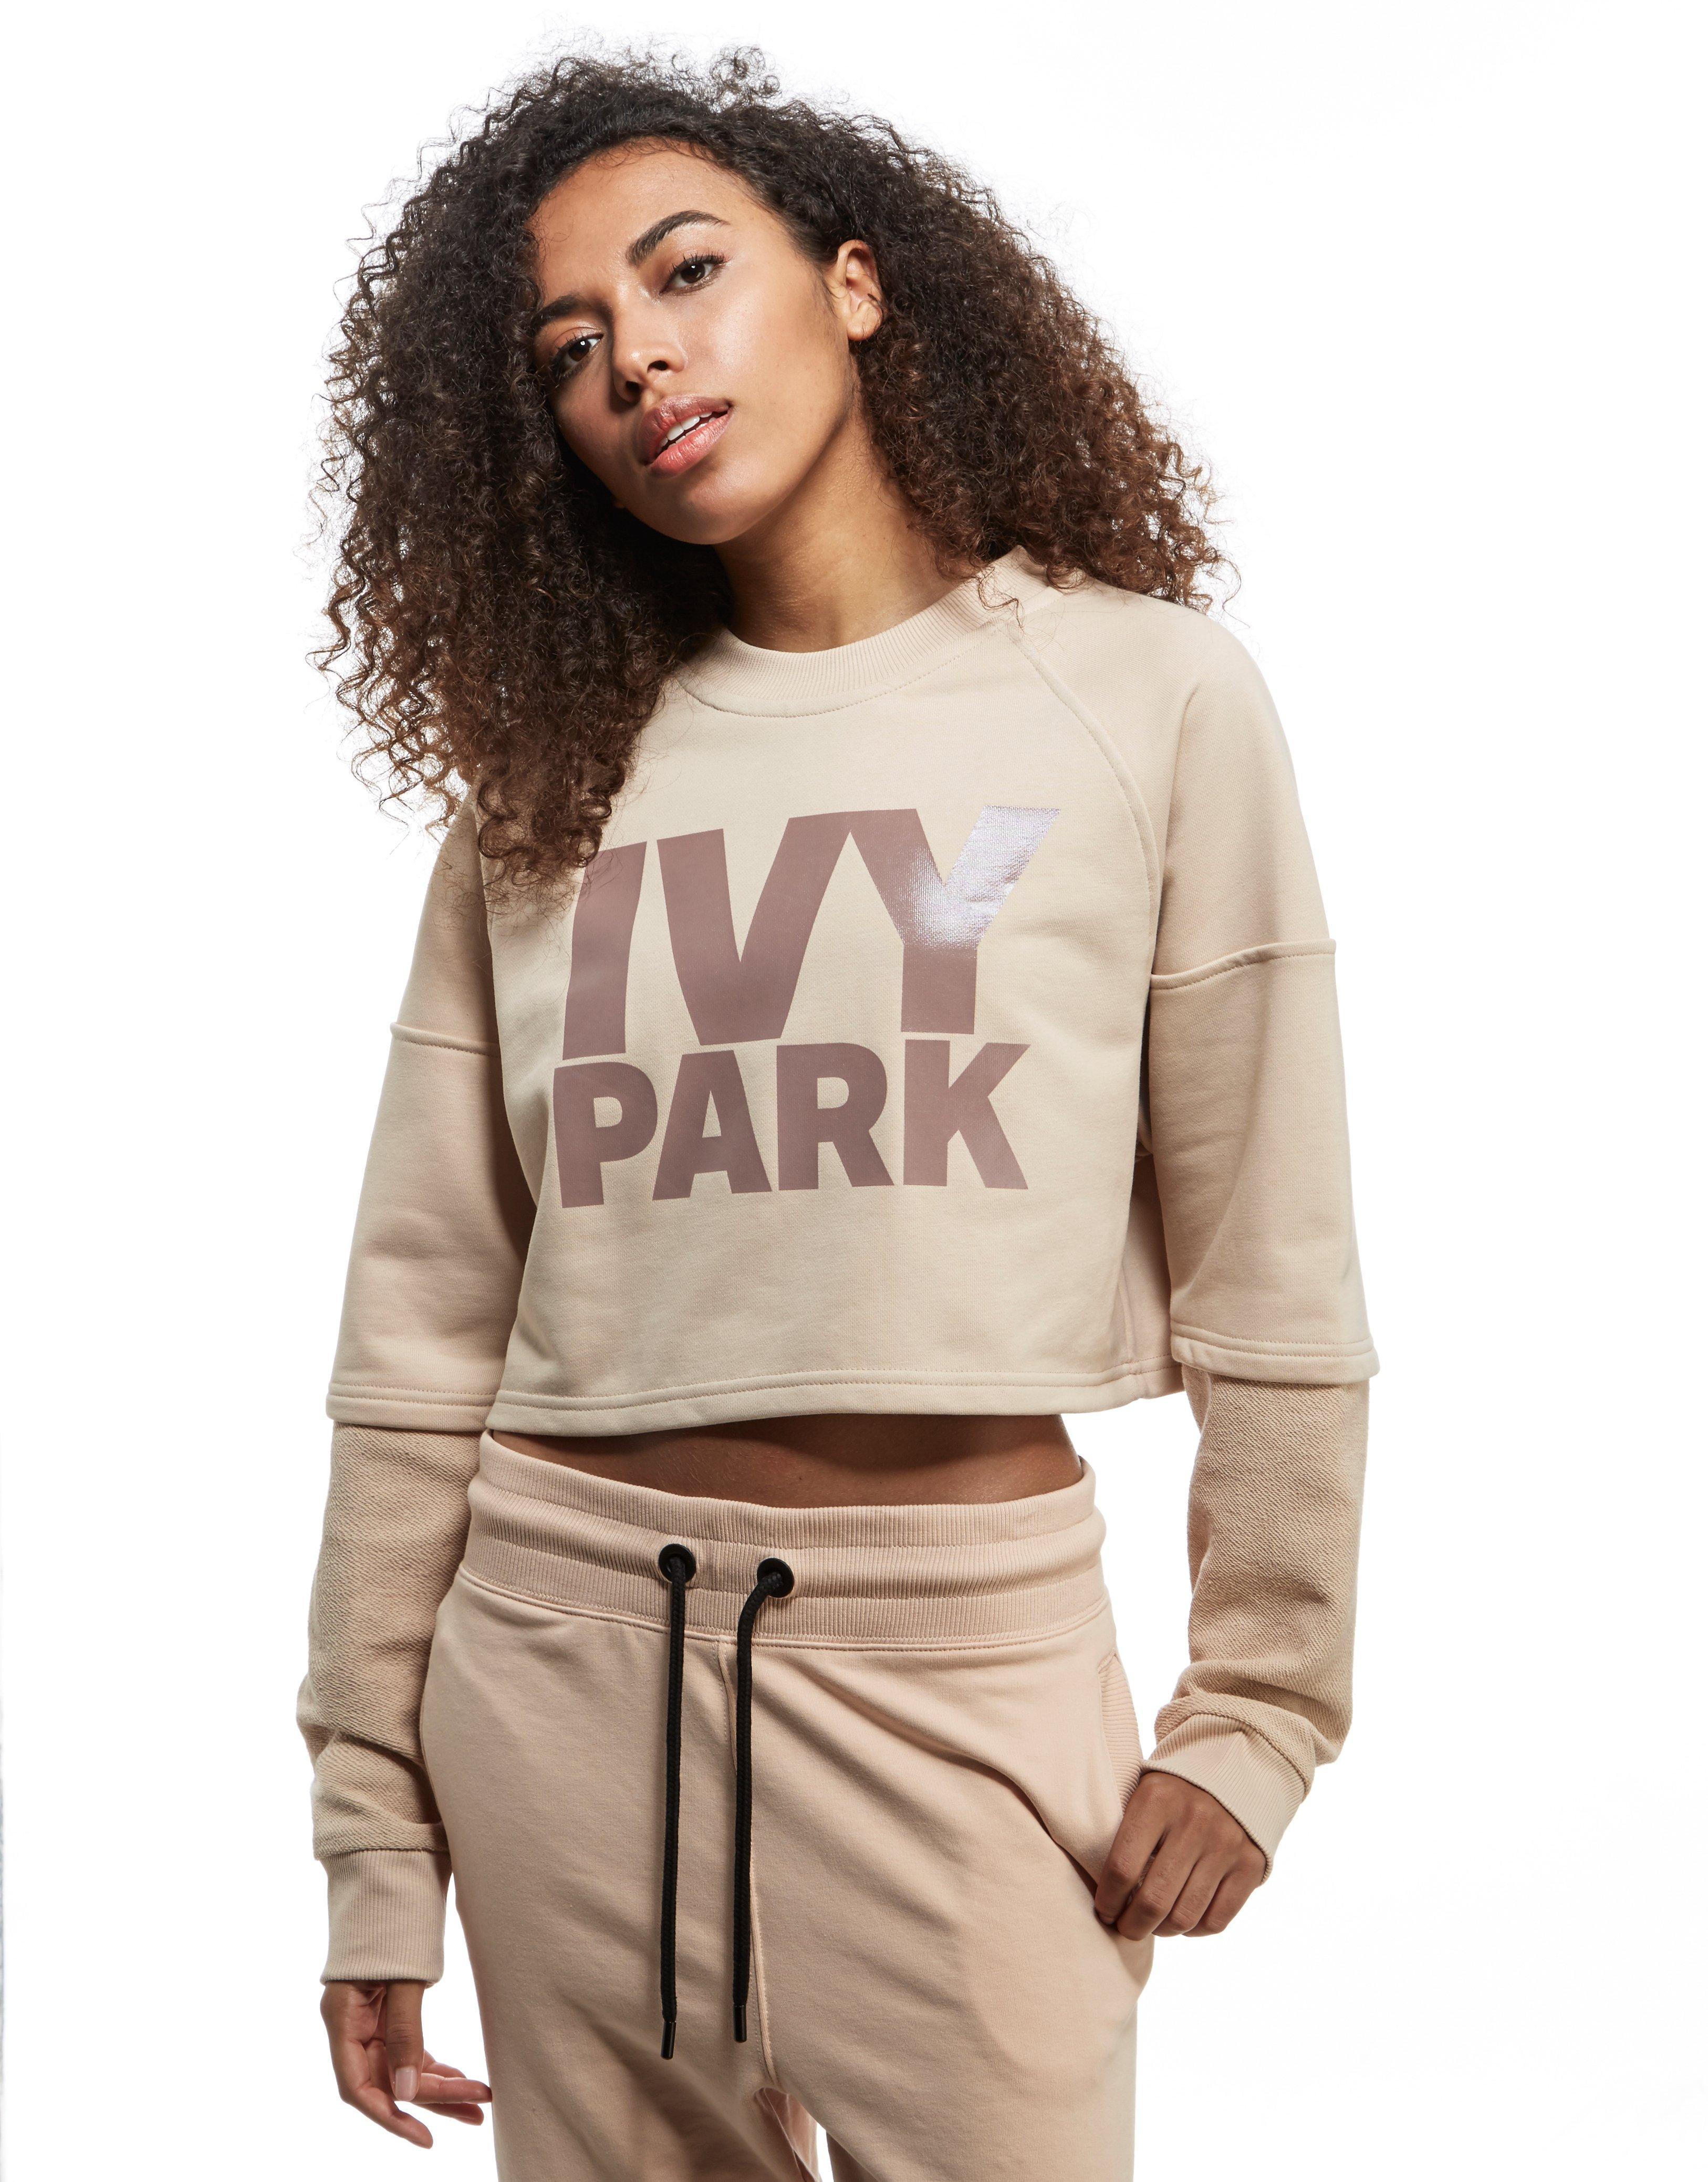 Lyst - Ivy park Washed Crew Crop Sweatshirt in Pink - Save 21%3252 x 4155